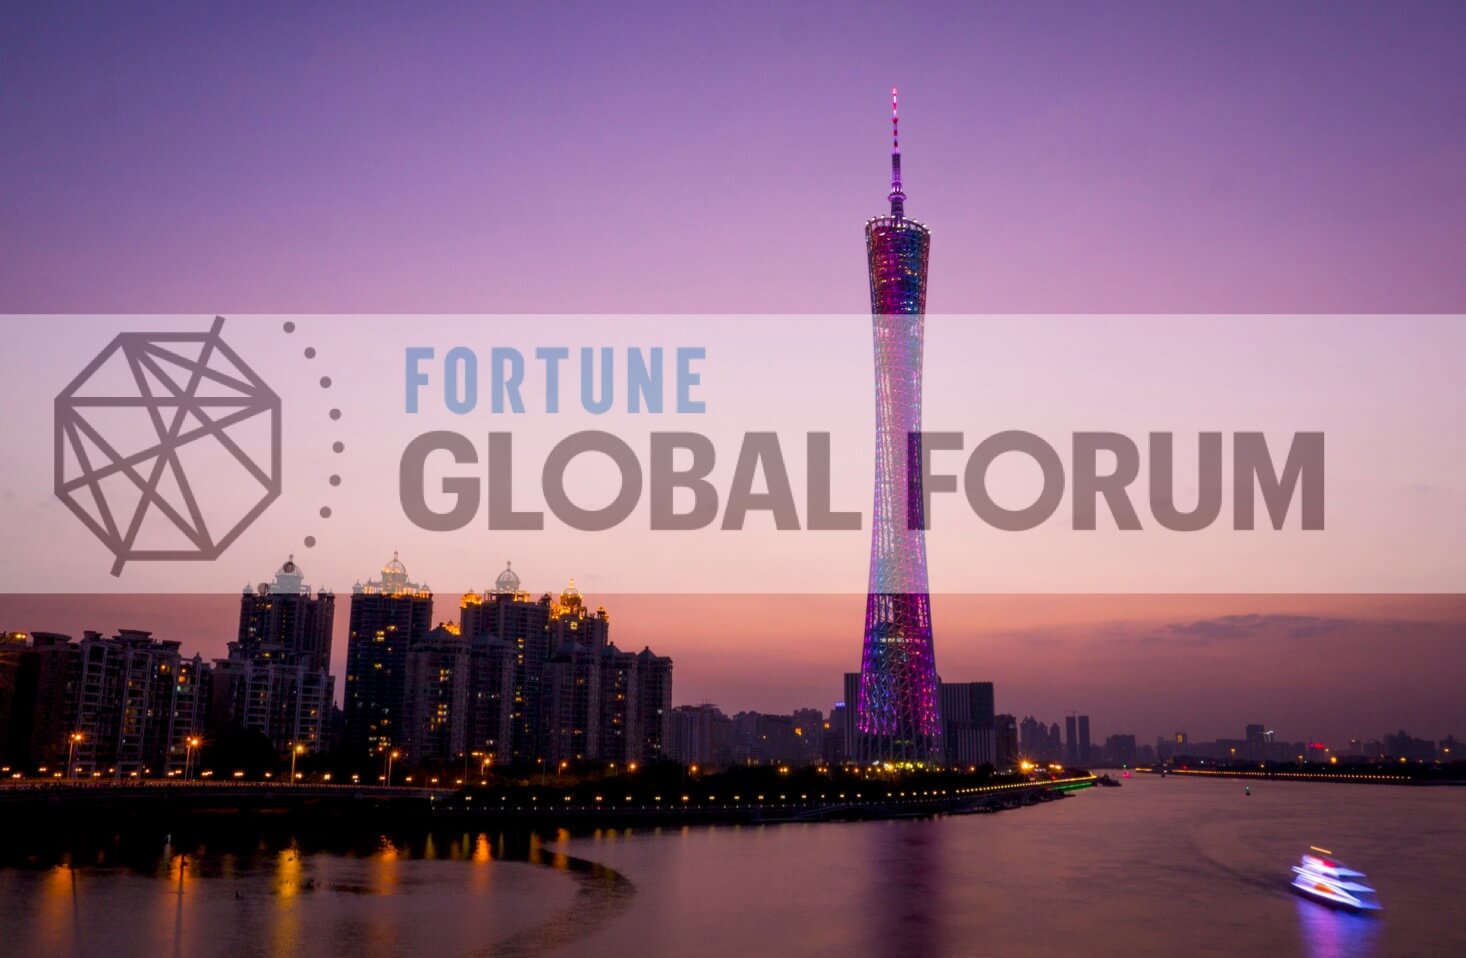 Fortune Global Forum 2017 Guangzhou